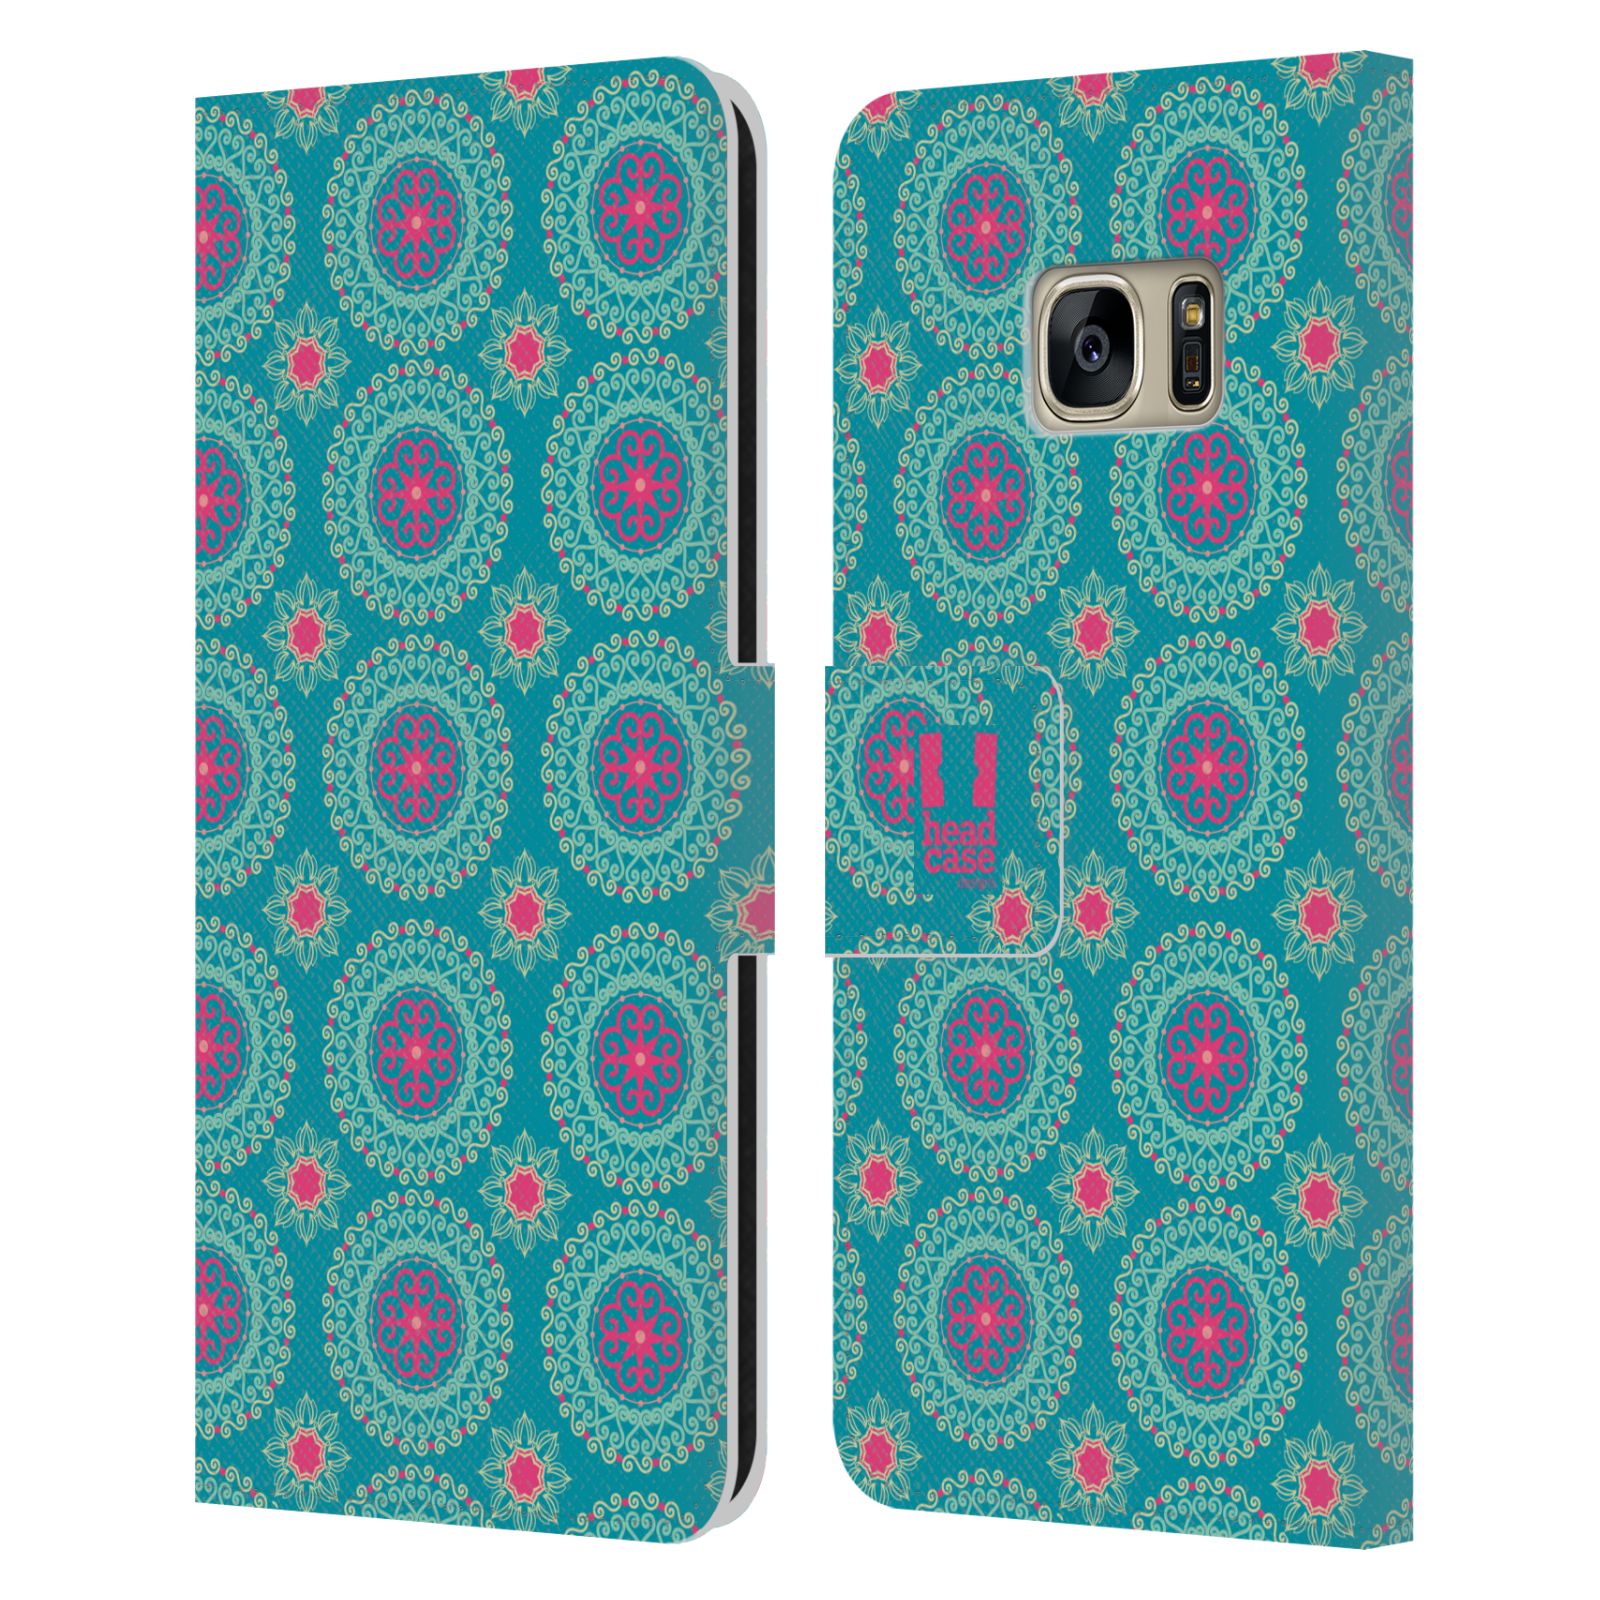 HEAD CASE Flipové pouzdro pro mobil Samsung Galaxy S7 (G9300) Slovanský vzor modrá/tyrkysová barva kaleidoskop